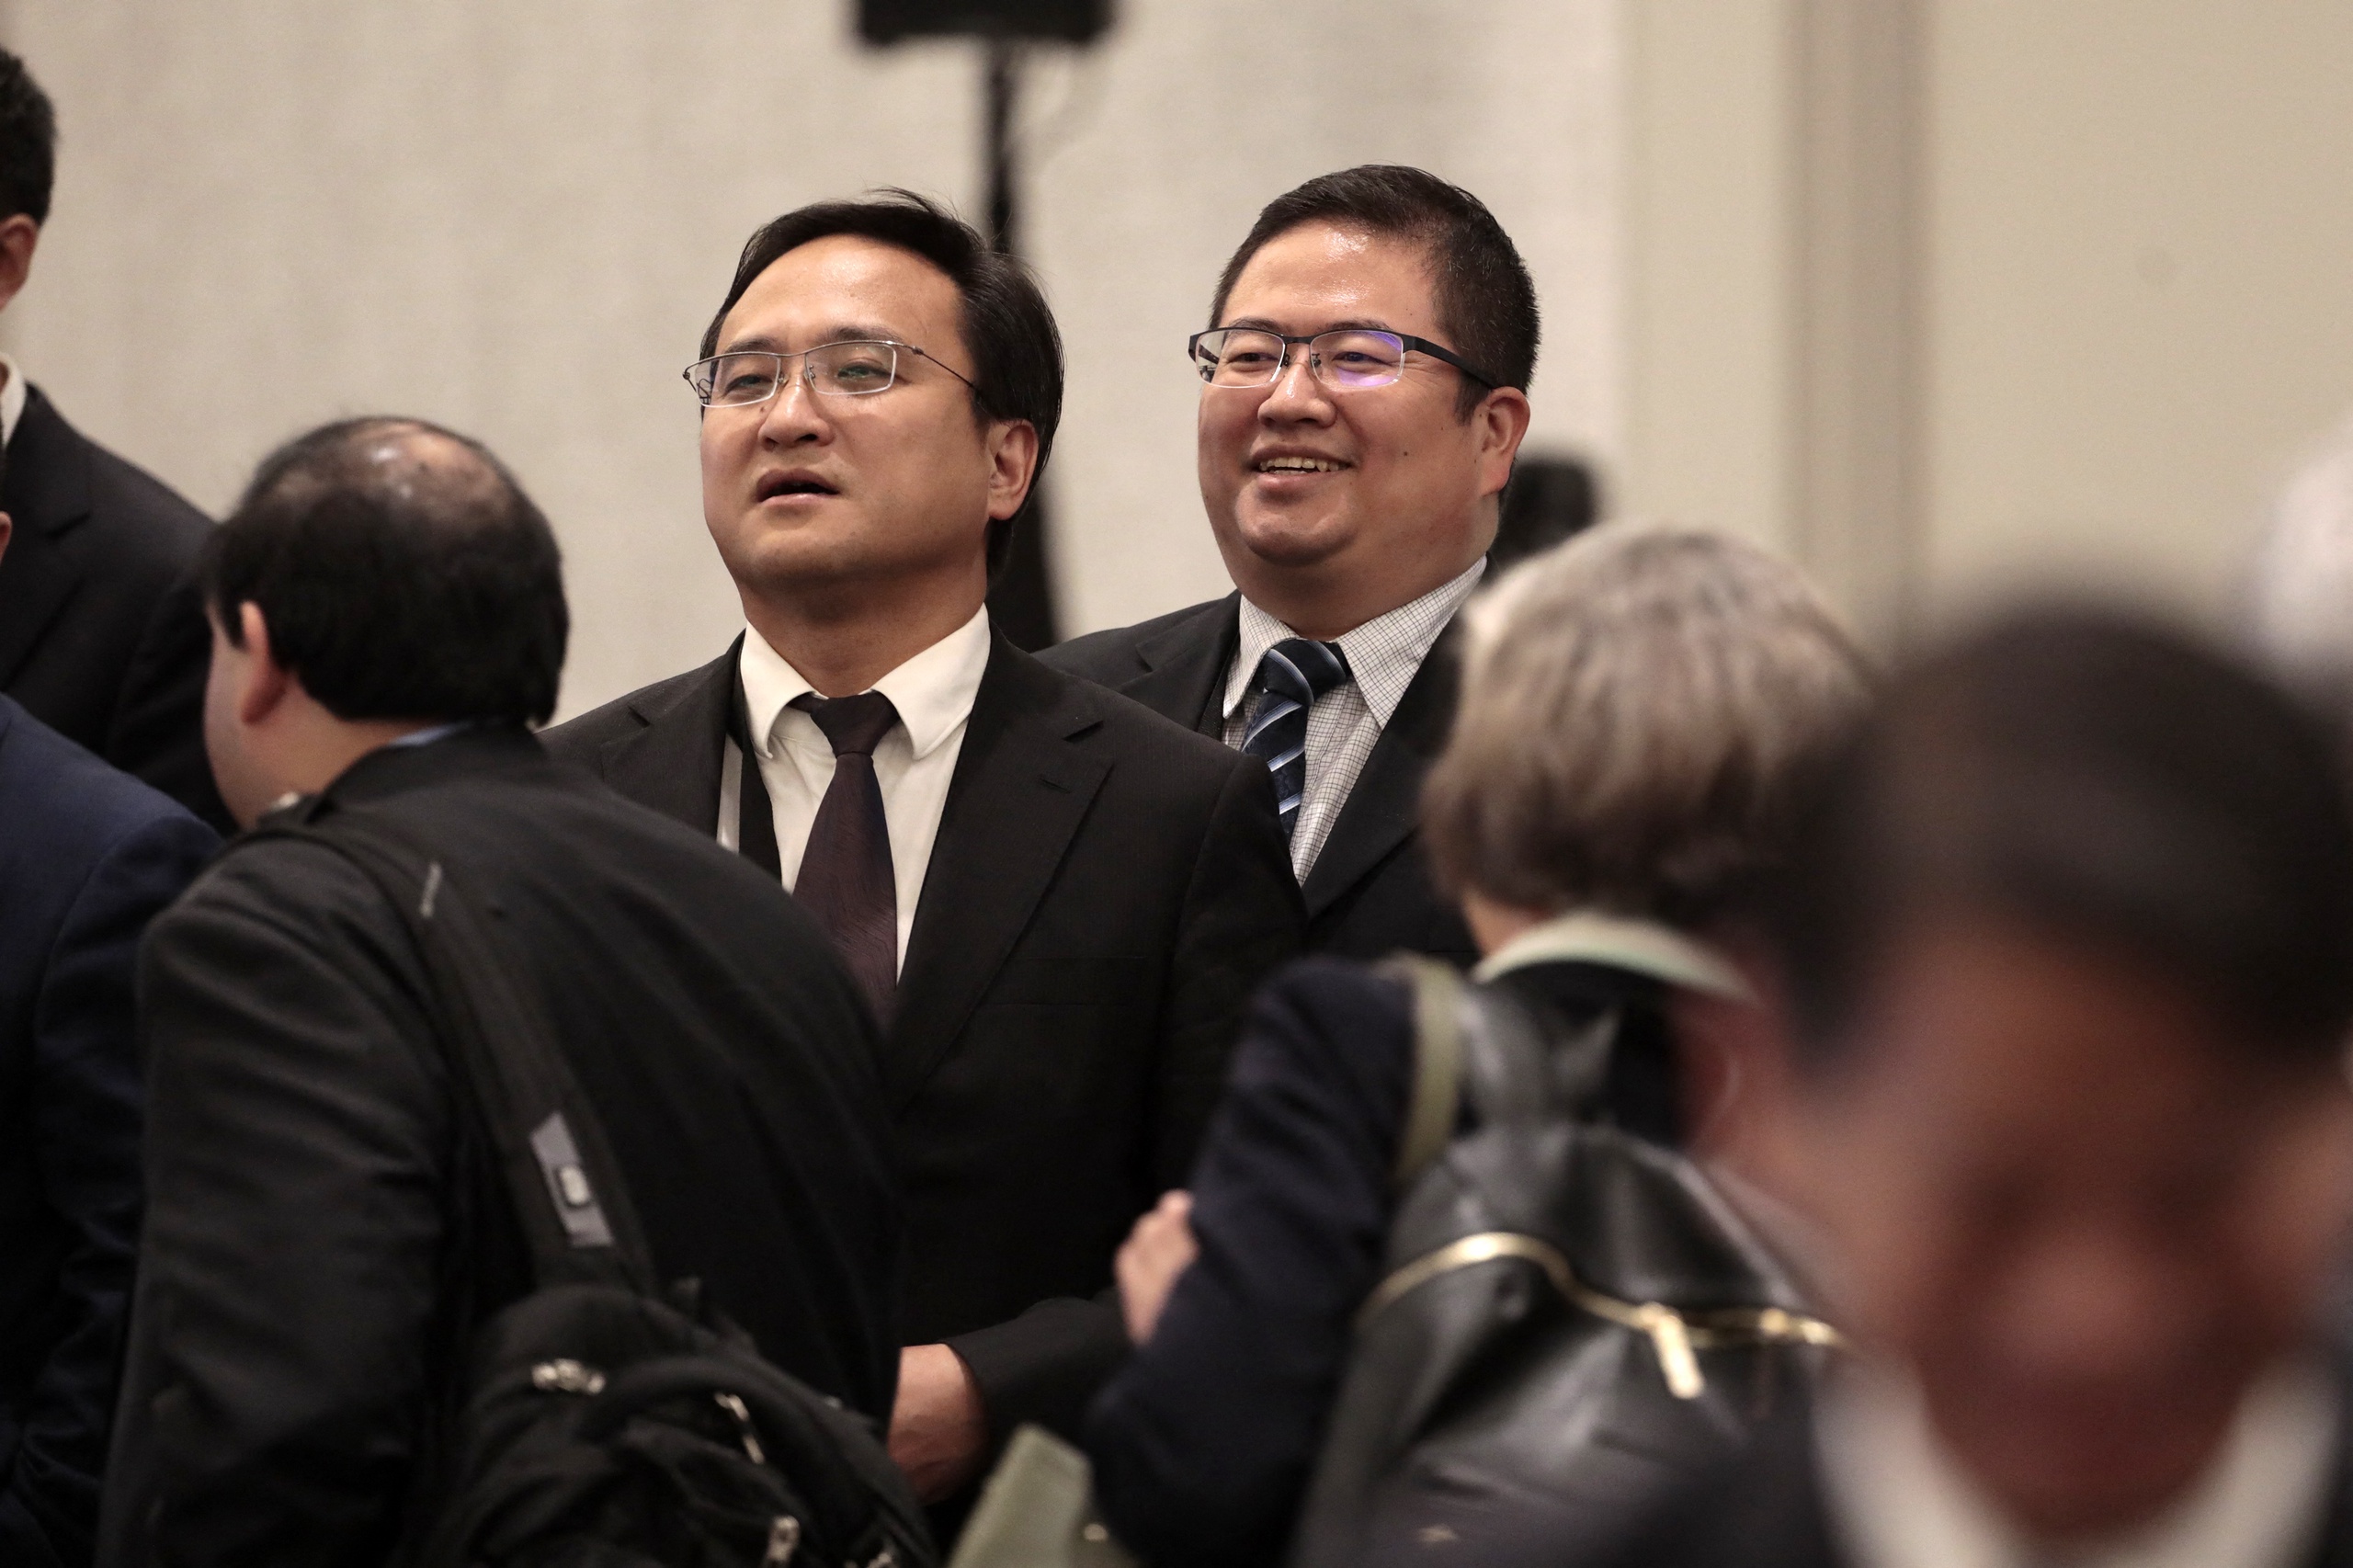 China en Zuid-Korea hebben afgesproken om de dialoog en samenwerking op het gebied van chips en halfgeleiders te versterken. Dat meldt Reuters. Een belangrijke stap 'in tijden van globale zorg over chiptekorten, sancties en nationale veiligheid', aldus de Chinese minister van Handel Wang Wentao.